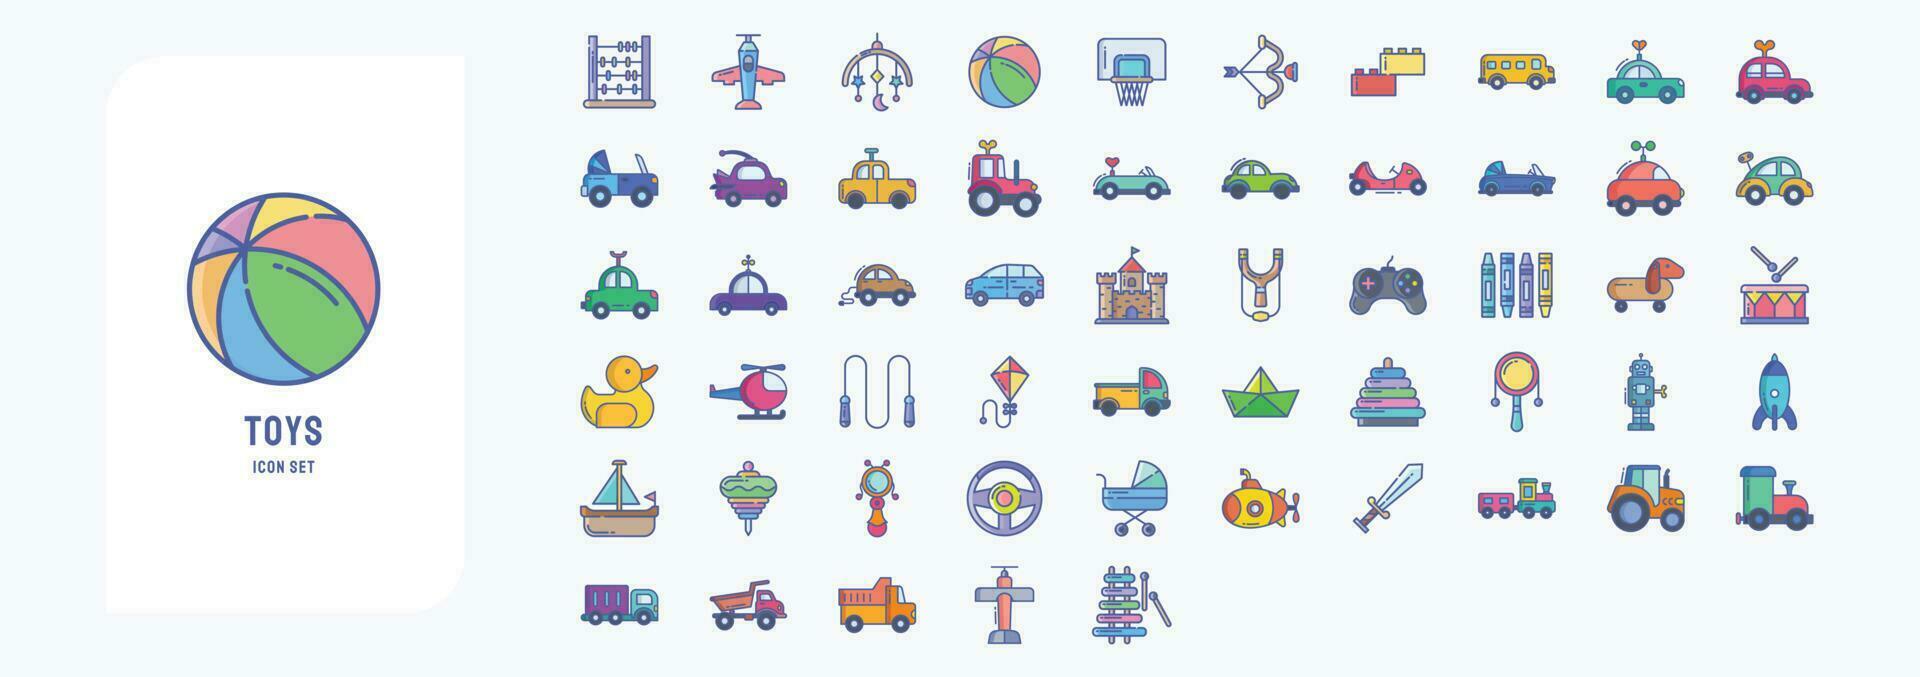 colección de íconos relacionado a juguetes, incluso íconos me gusta ábaco, avión, pelota, baloncesto y más vector